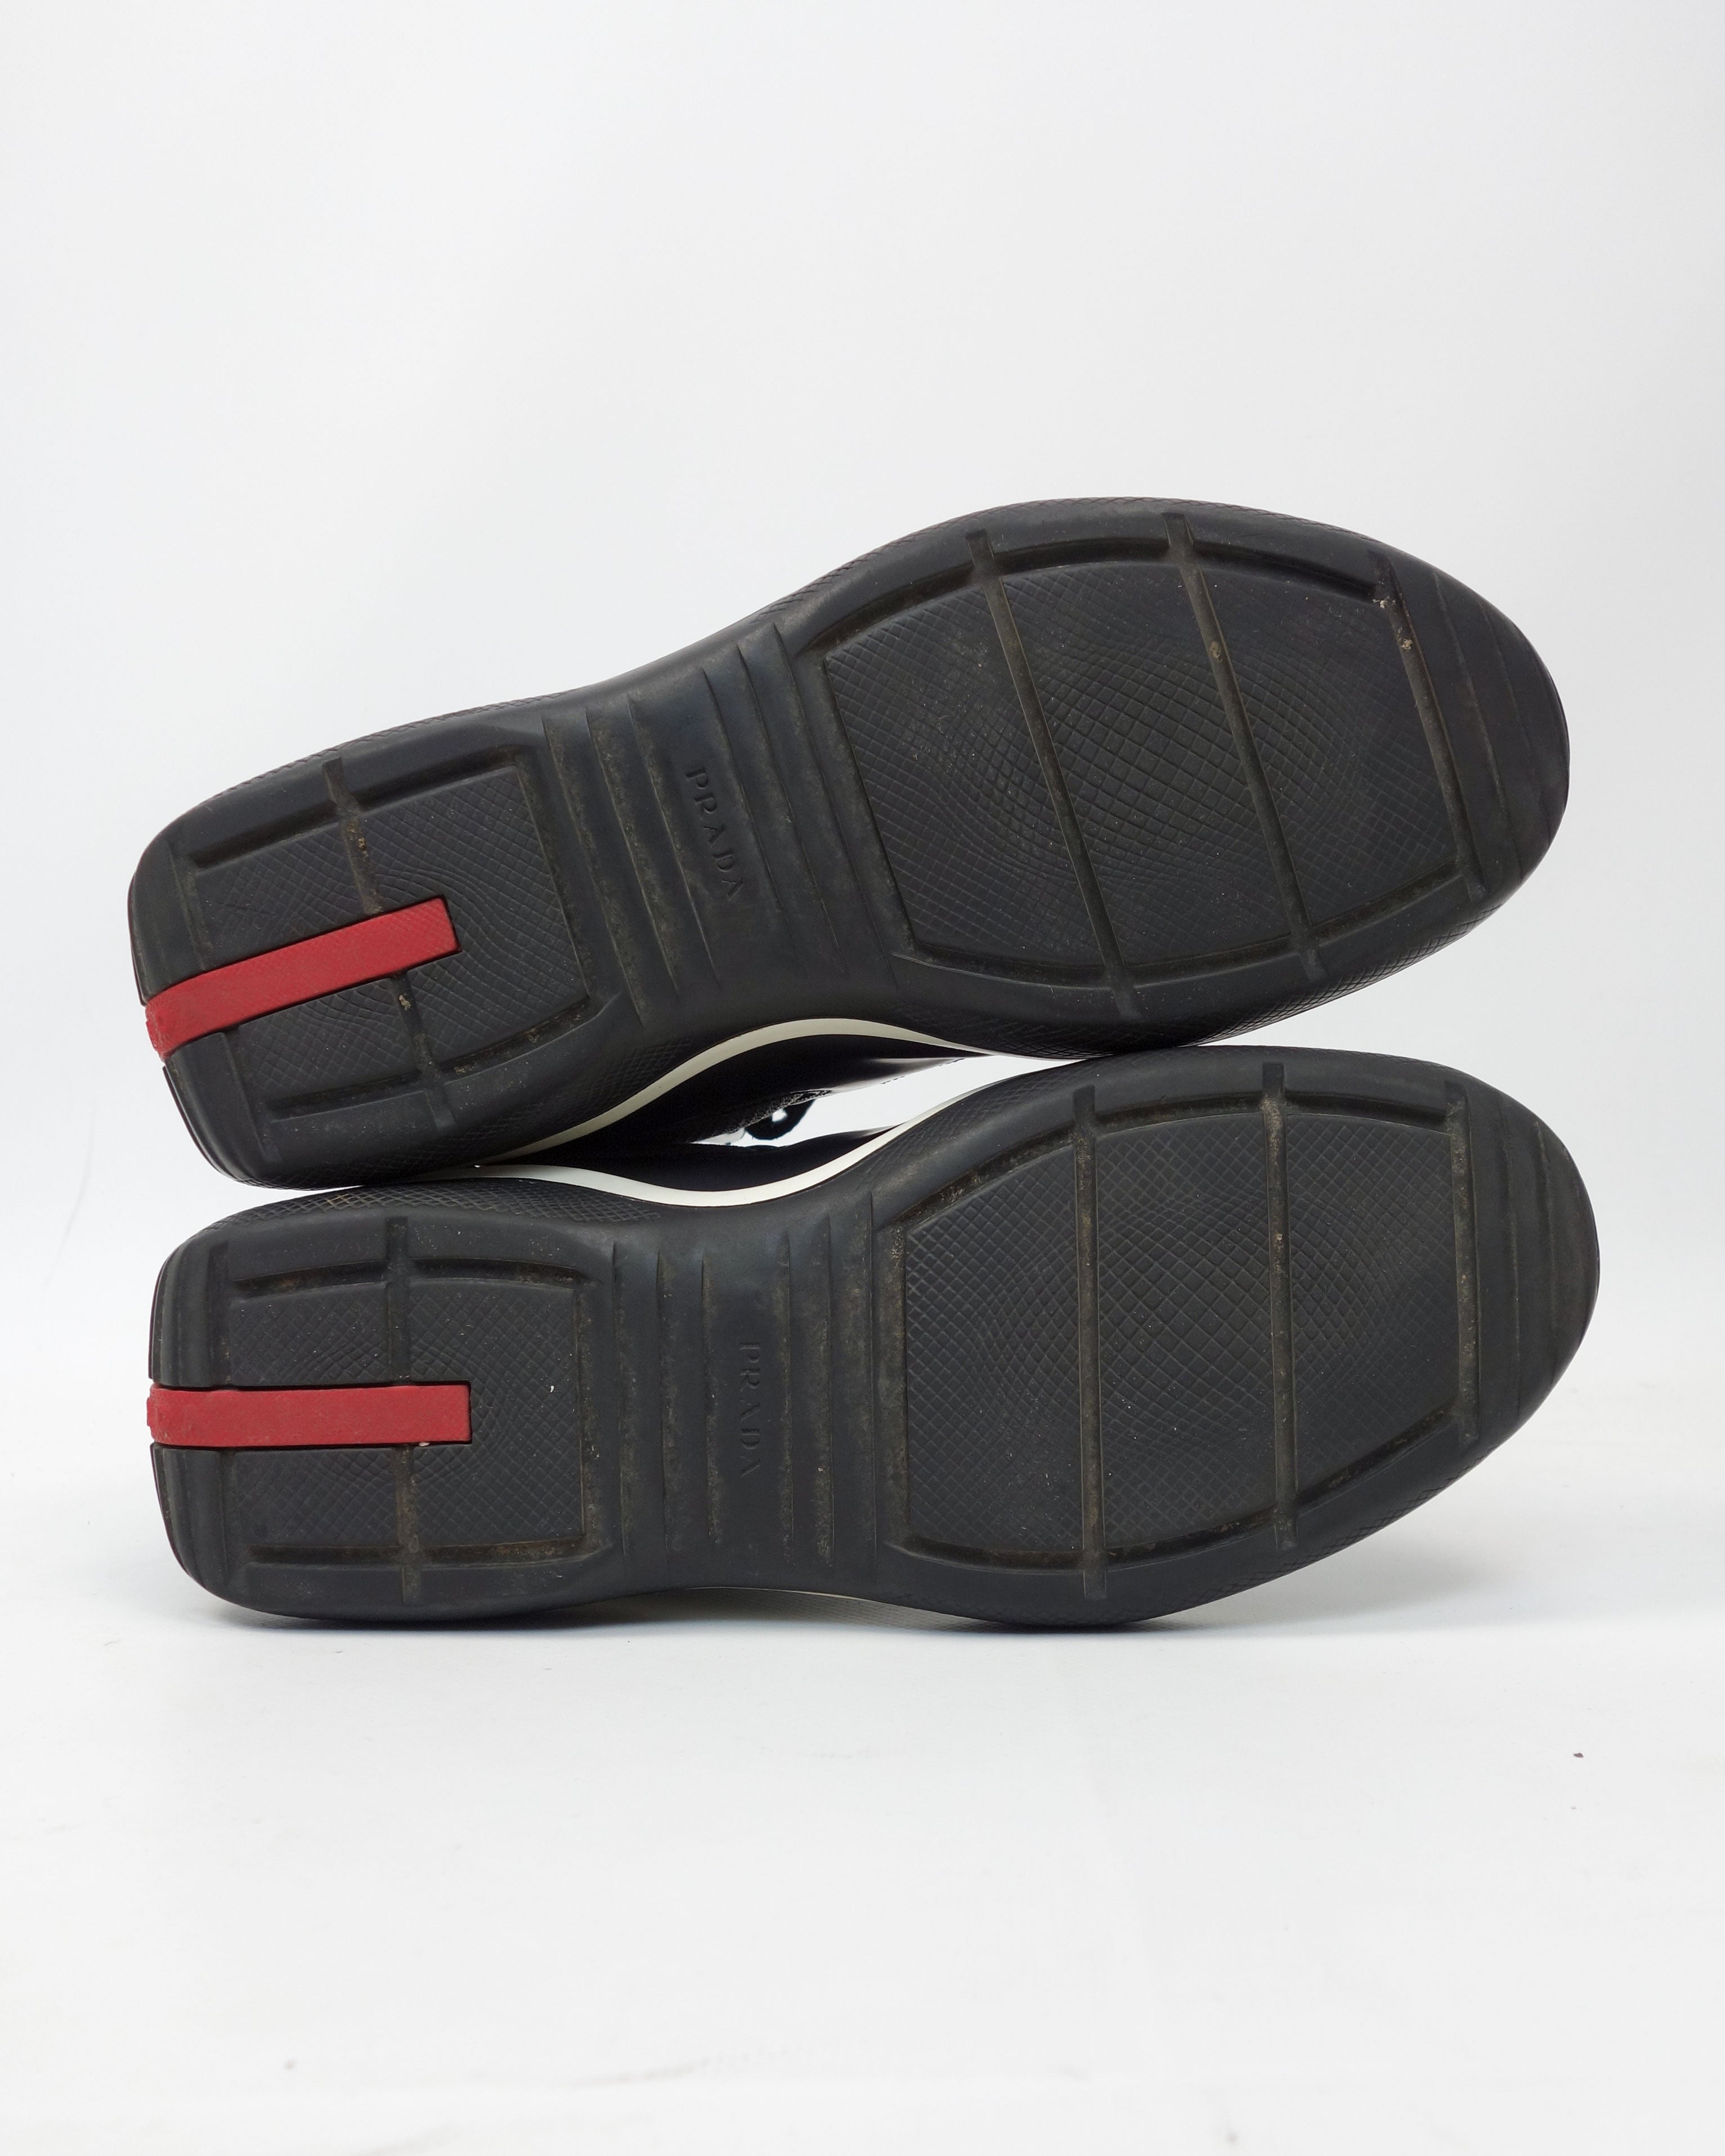 Prada Biker Black Leather High Sneakers FW 1999 – Vintage TTS